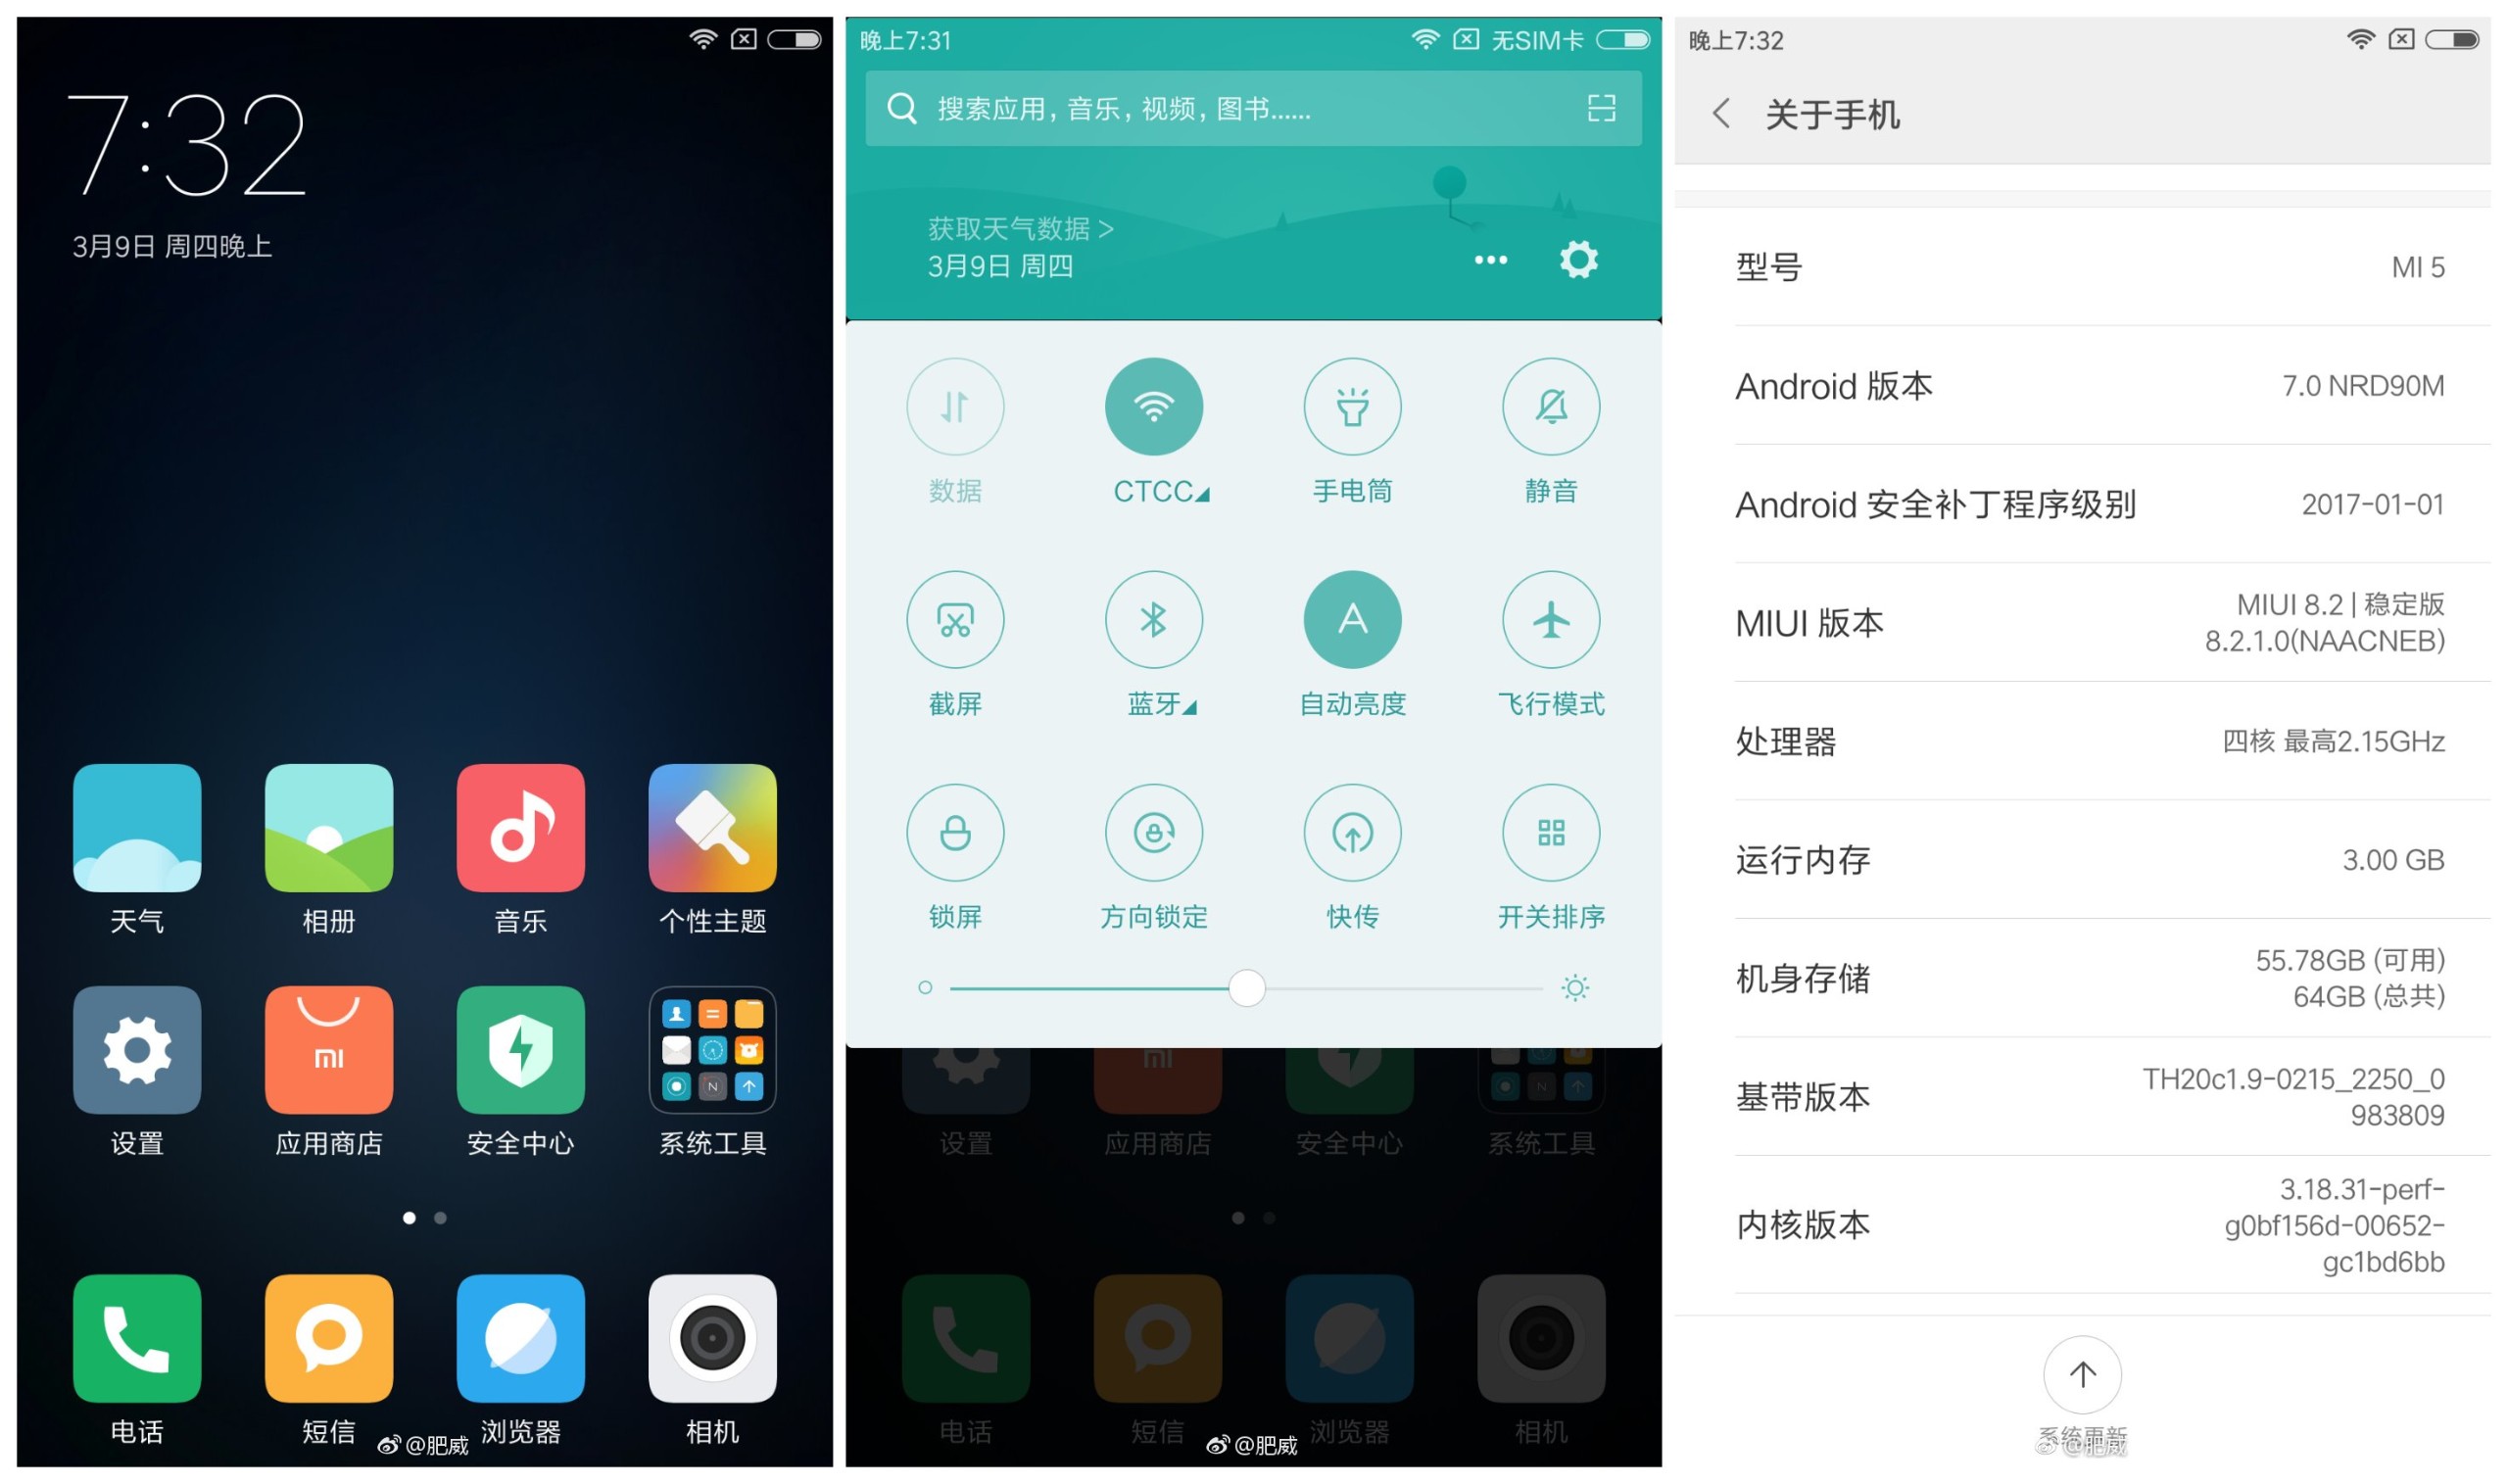 La actualización de Xiaomi Mi 5 Nougat se implementa con MIUI 8.2 en China